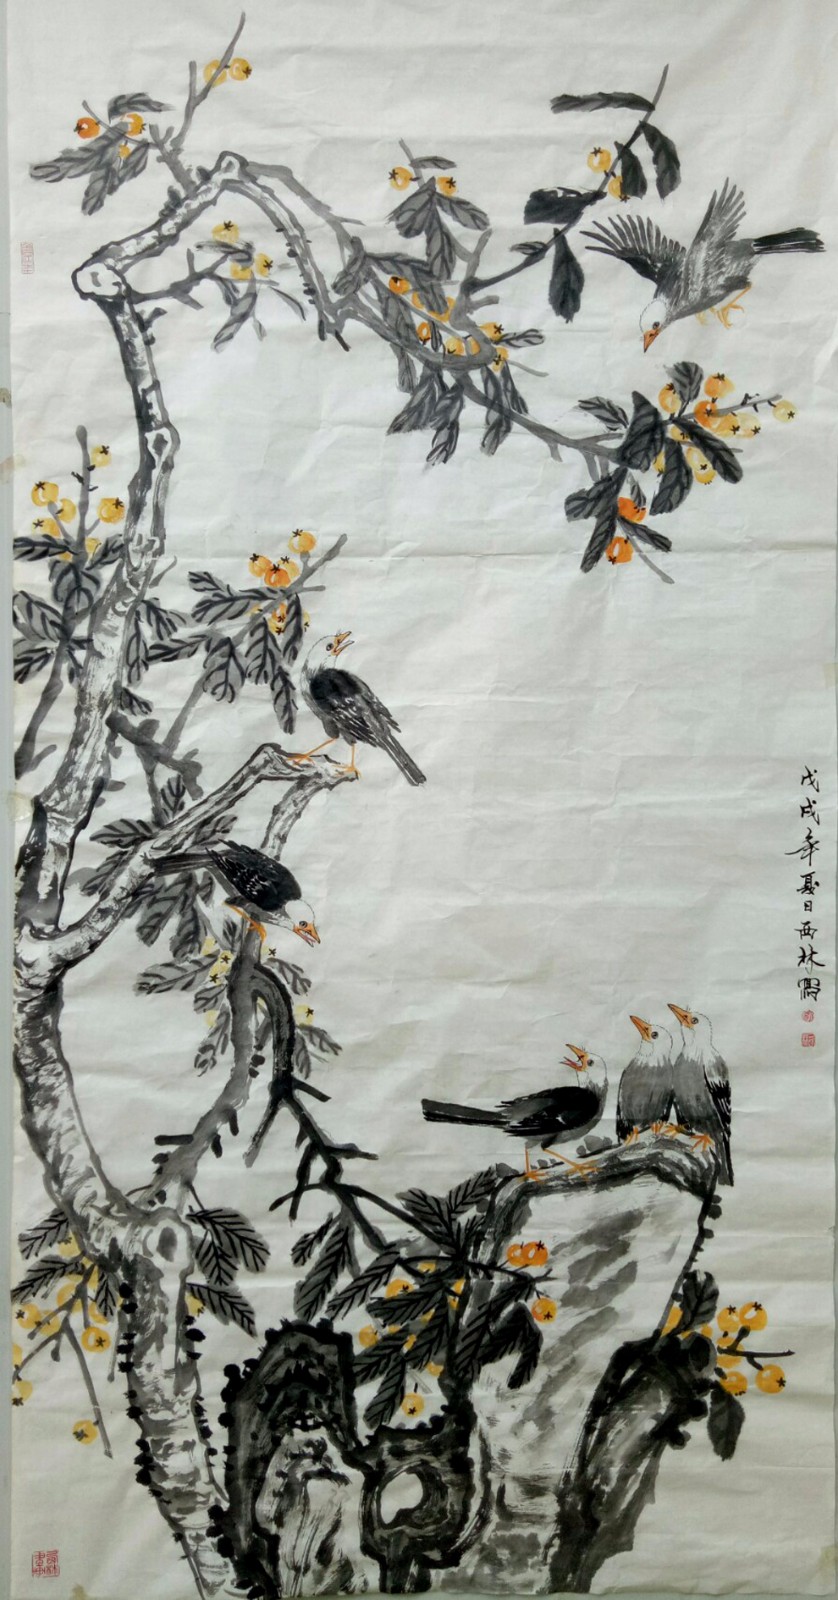 活色生香寓情趣—品读刘西林工笔花鸟艺术